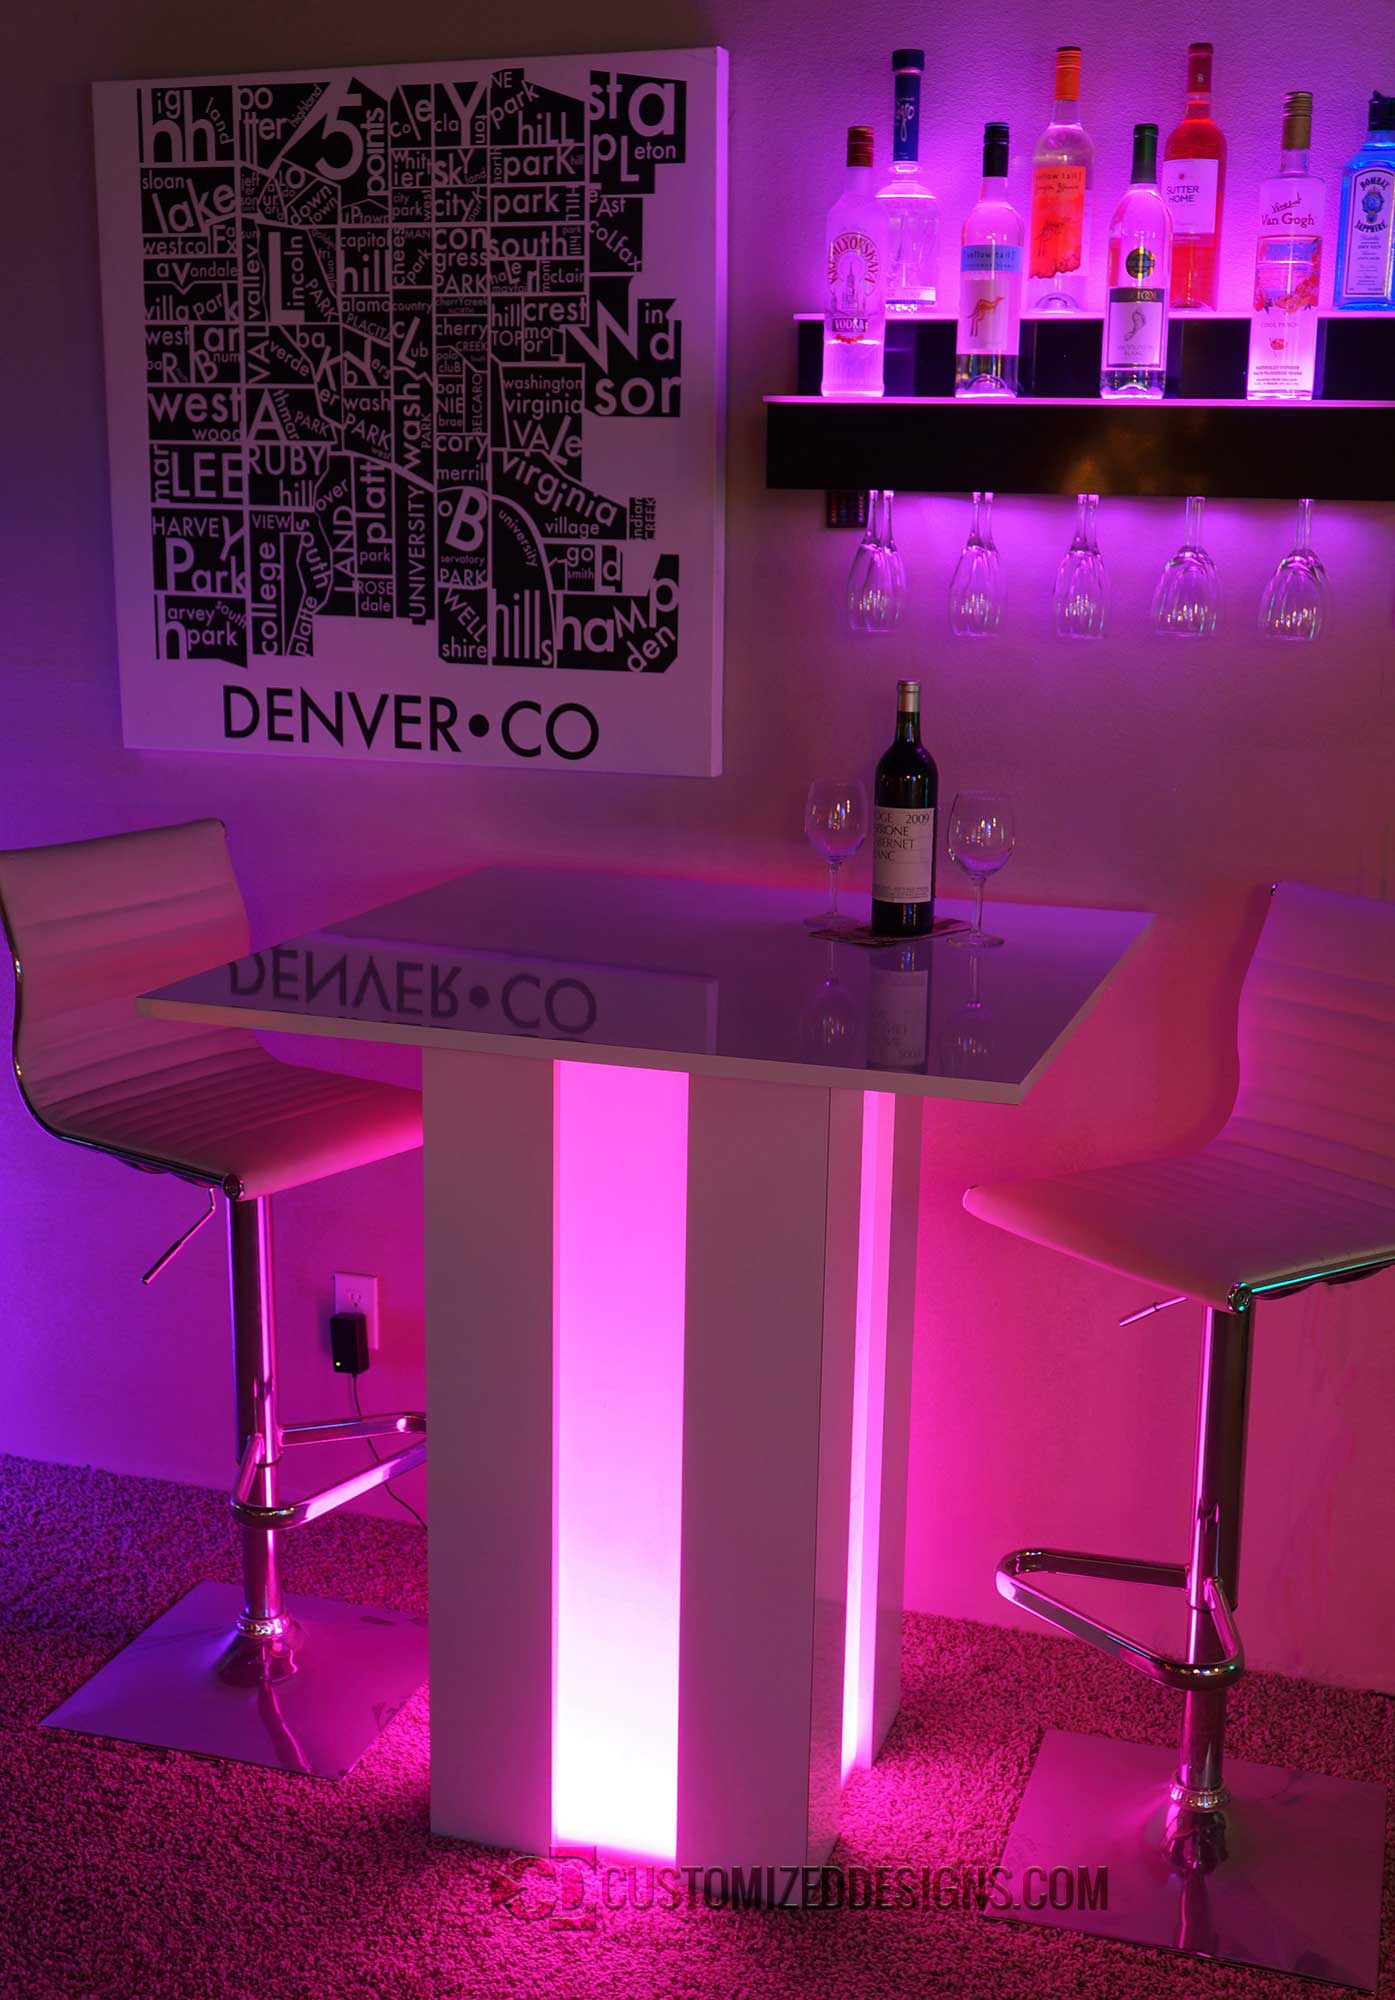 Mirage Illuminated Lounge Table